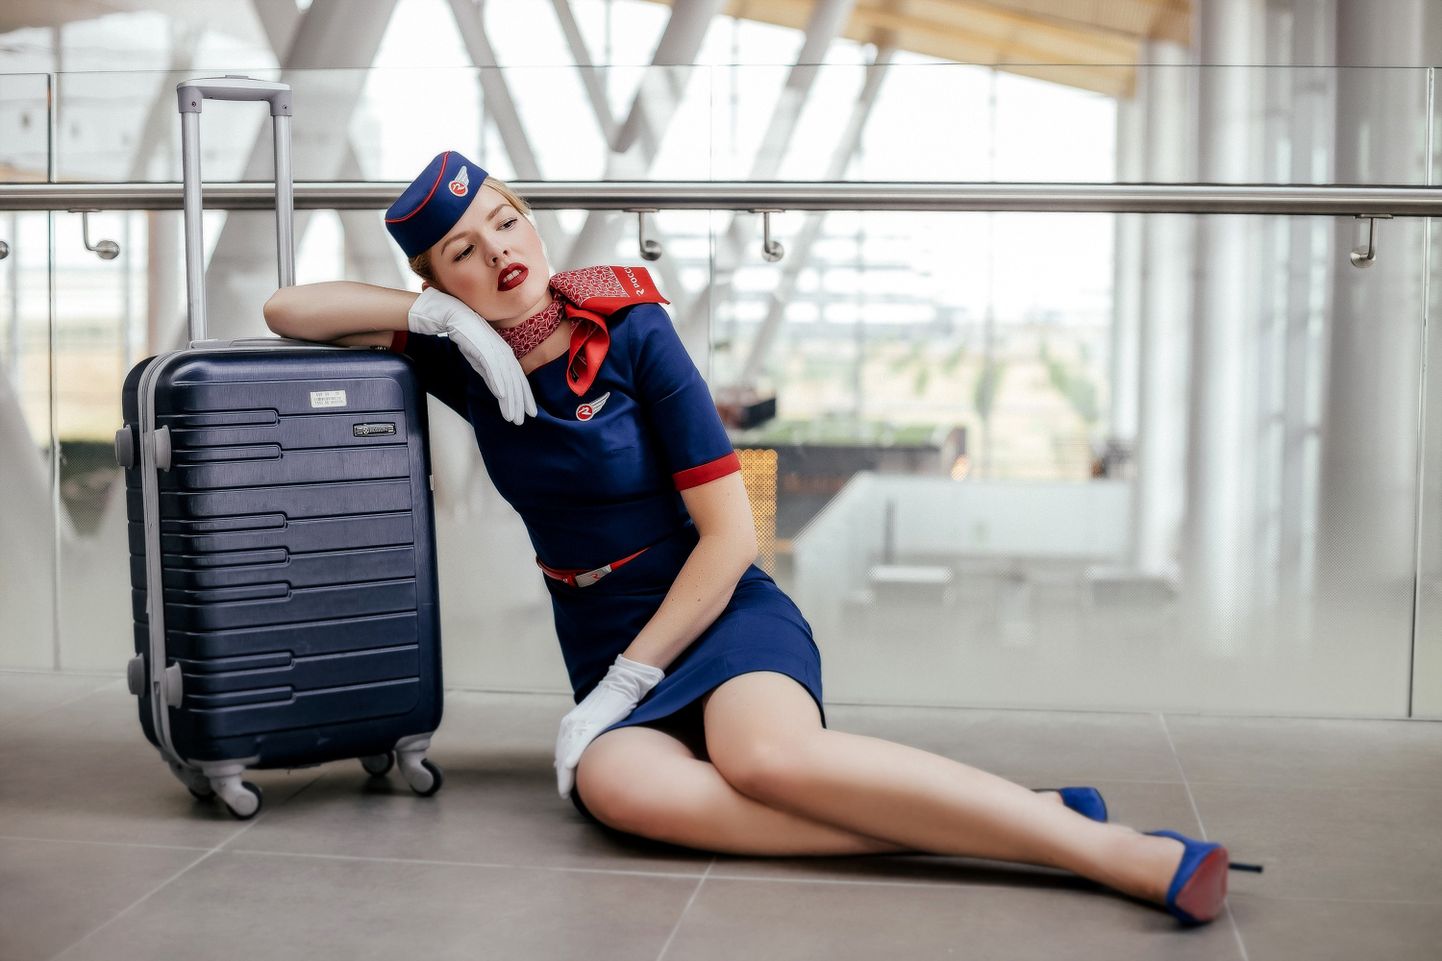 Pilt on illustreeriv: stjuardess kohvriga.